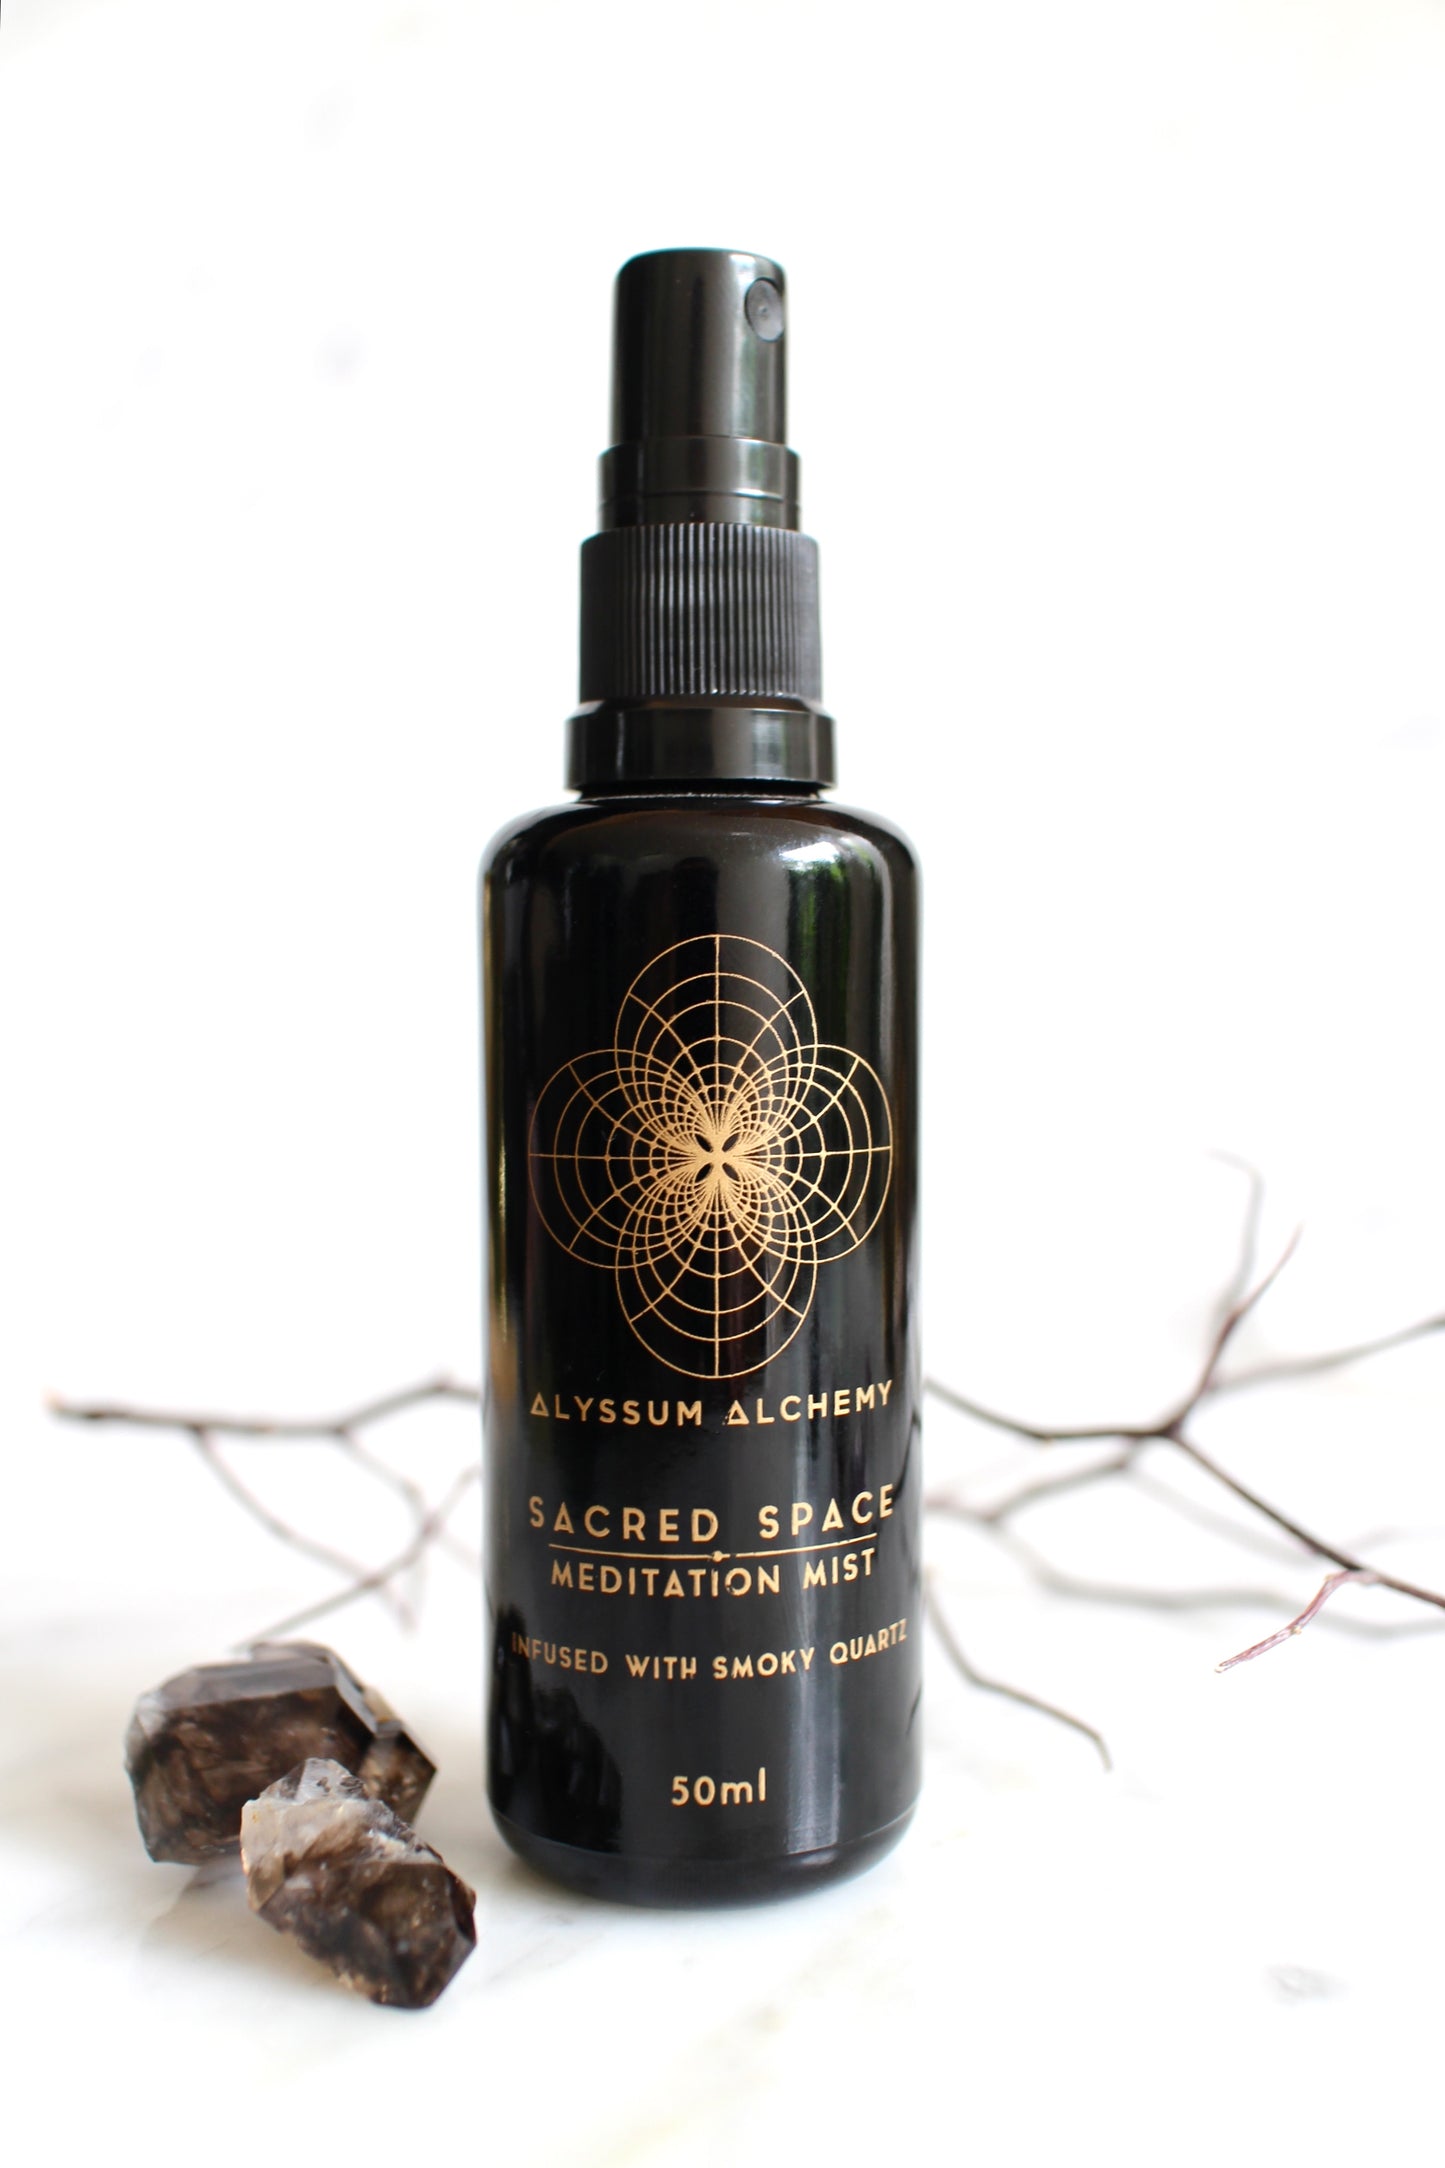 Sacred Space Meditation Mist - Crystal infused Botanical Perfume